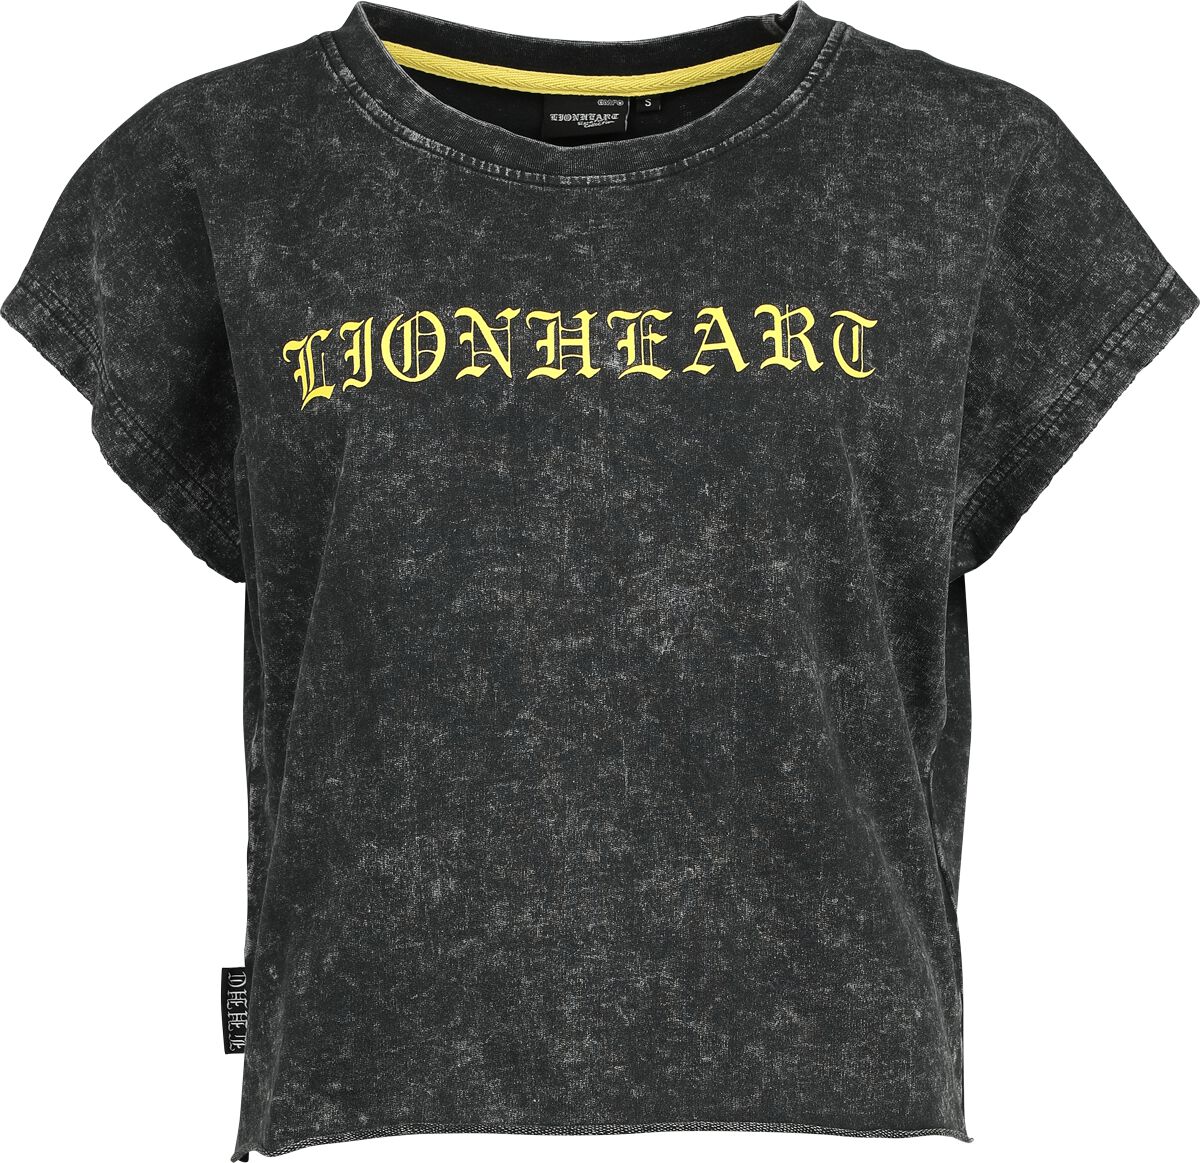 Lionheart T-Shirt - EMP Signature Collection - XS bis 3XL - für Damen - Größe XS - grau  - EMP exklusives Merchandise!